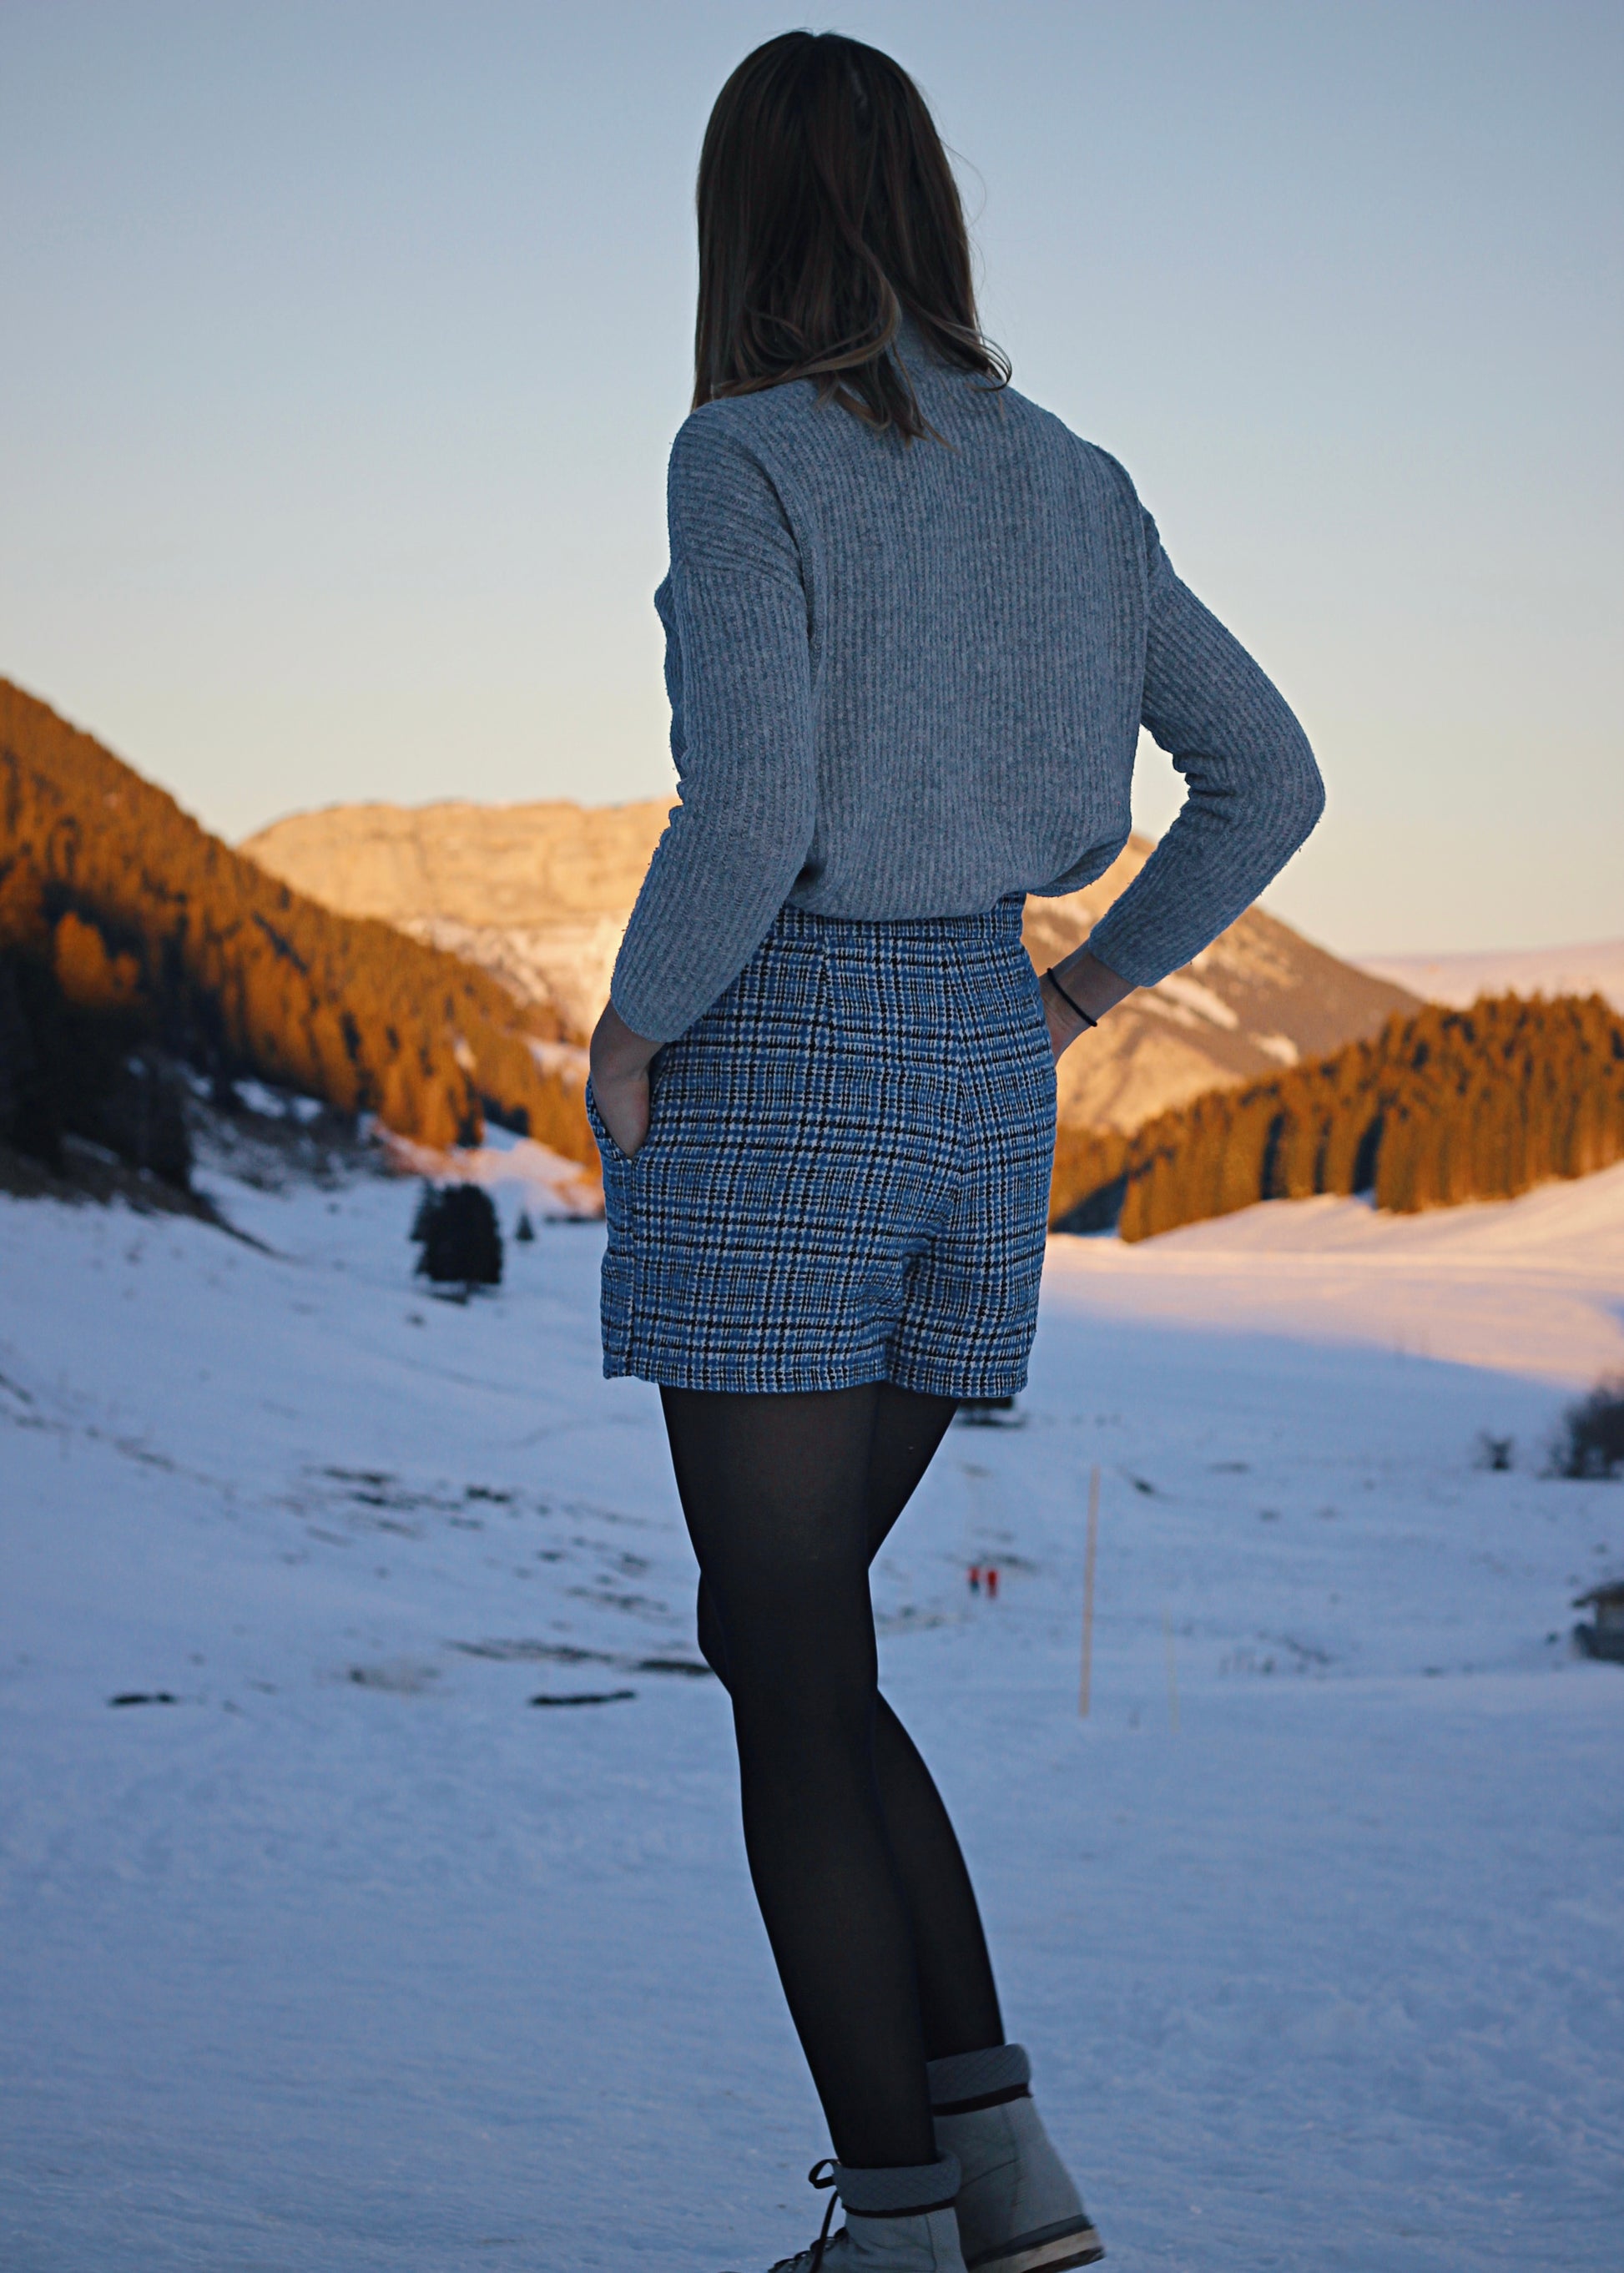 Jupe-short de dos, dans la neige, ambiance hivernale au soleil couchant.